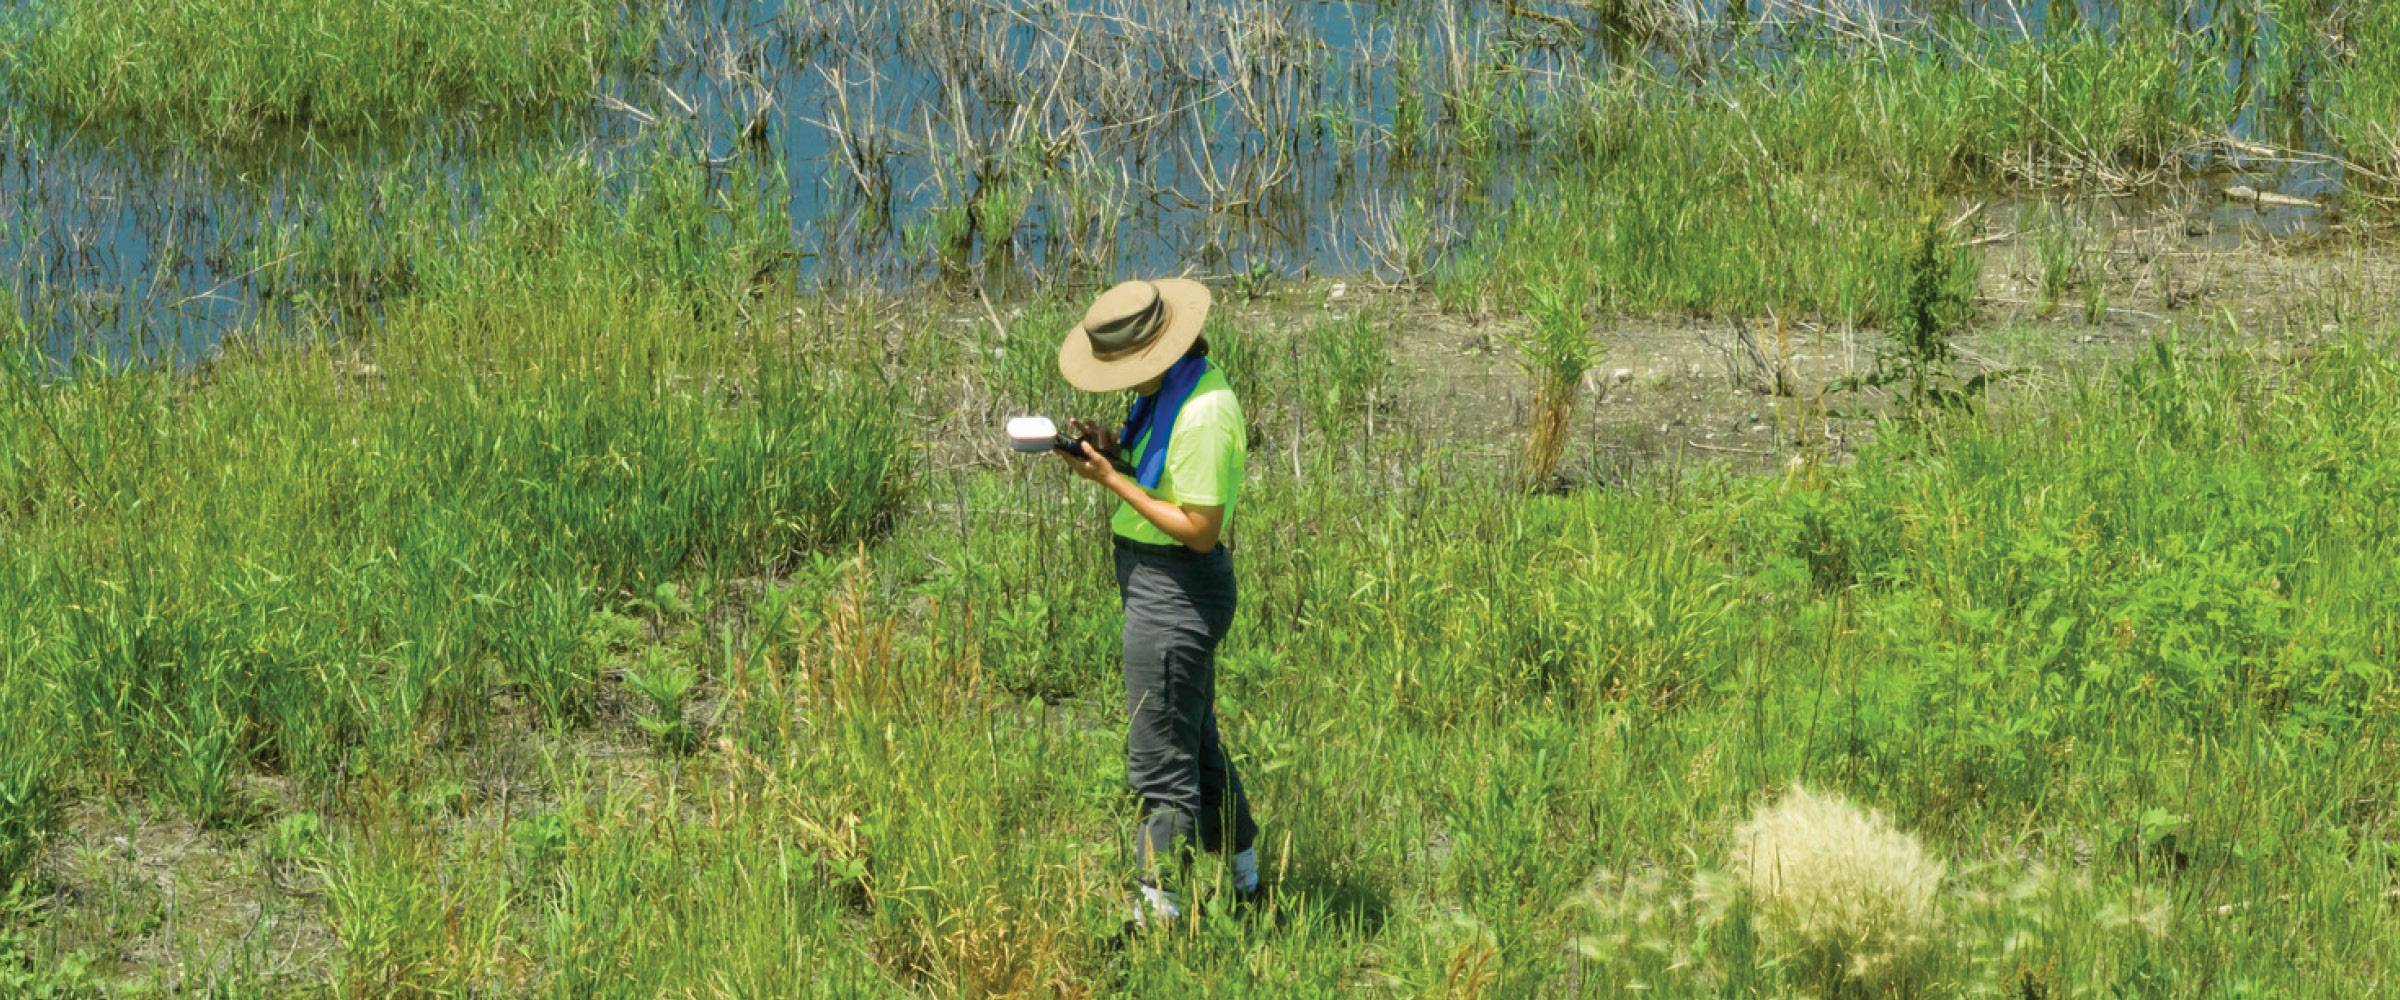 Field technician in wetland